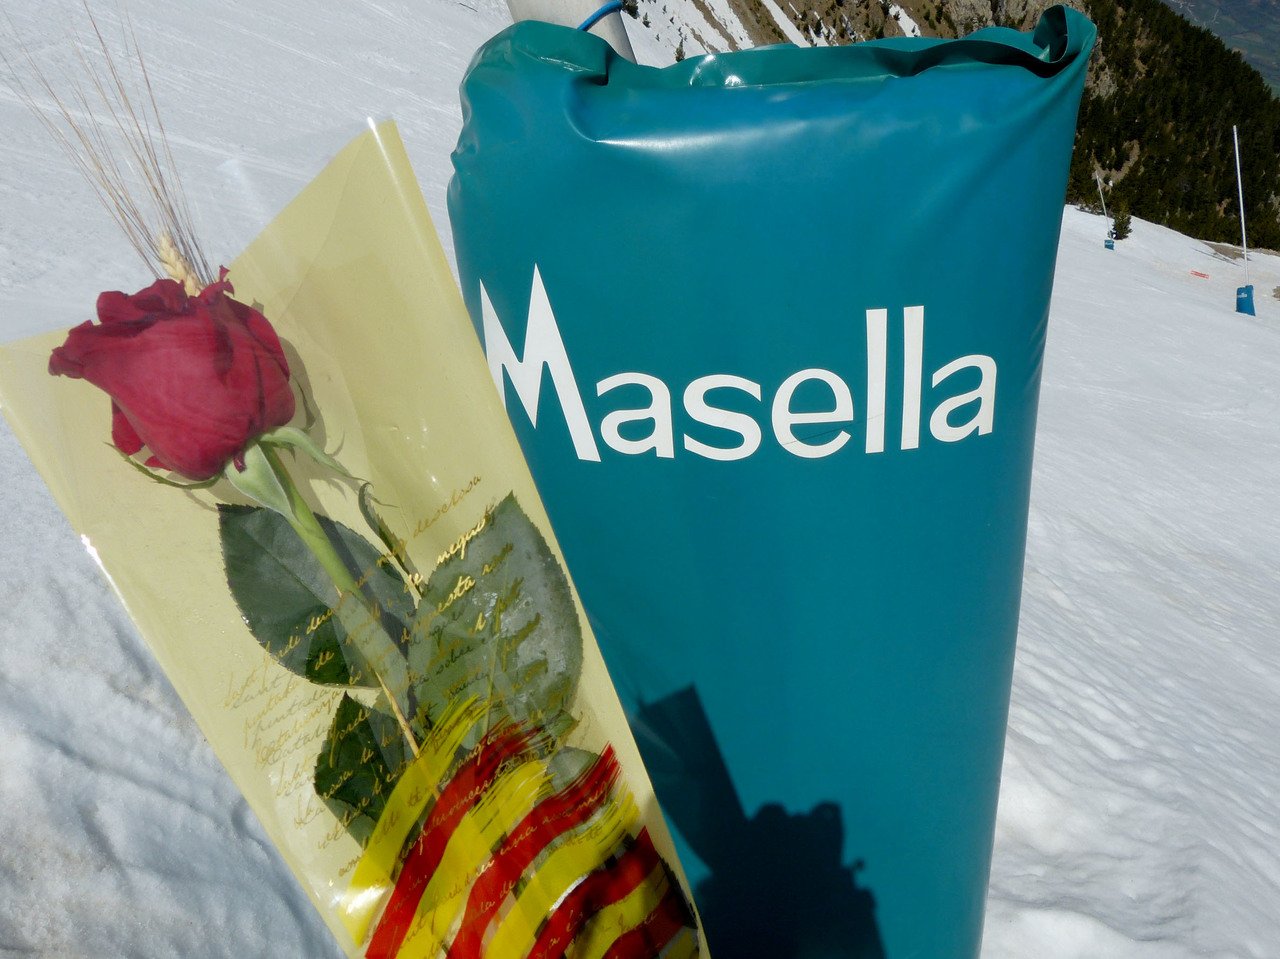 Masella queda como la única estación abierta en la península - Noticias - Nevasport.com